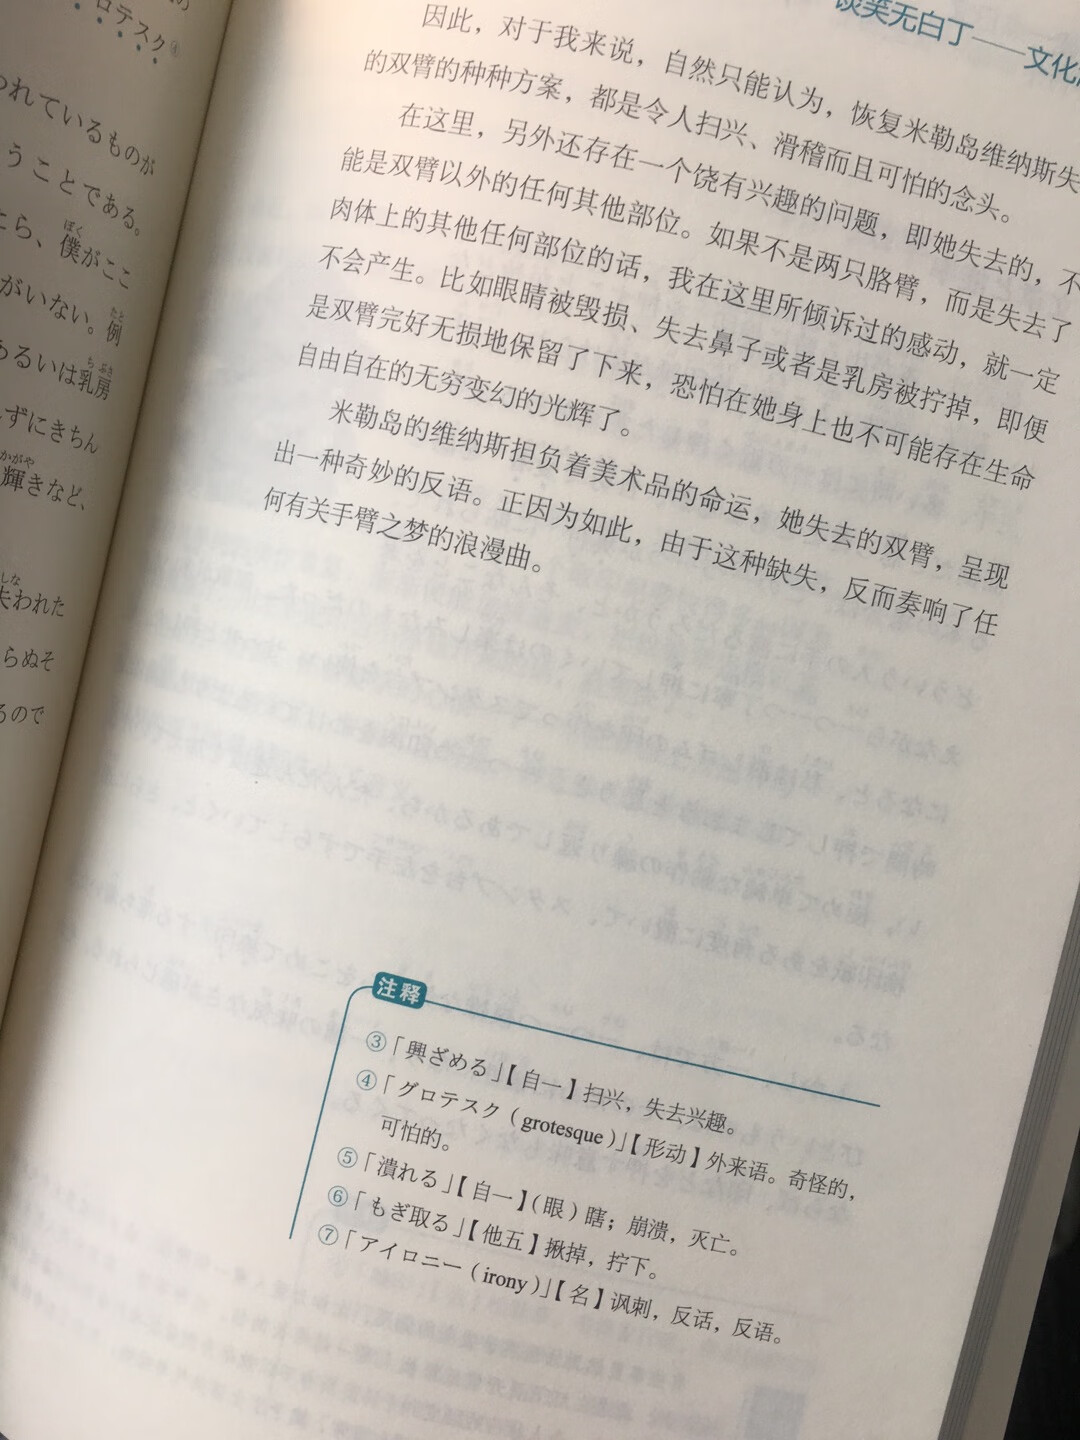 中文和日语对照，还有词汇解释。每一篇文章都不长。每天读一点，相信很有帮助。